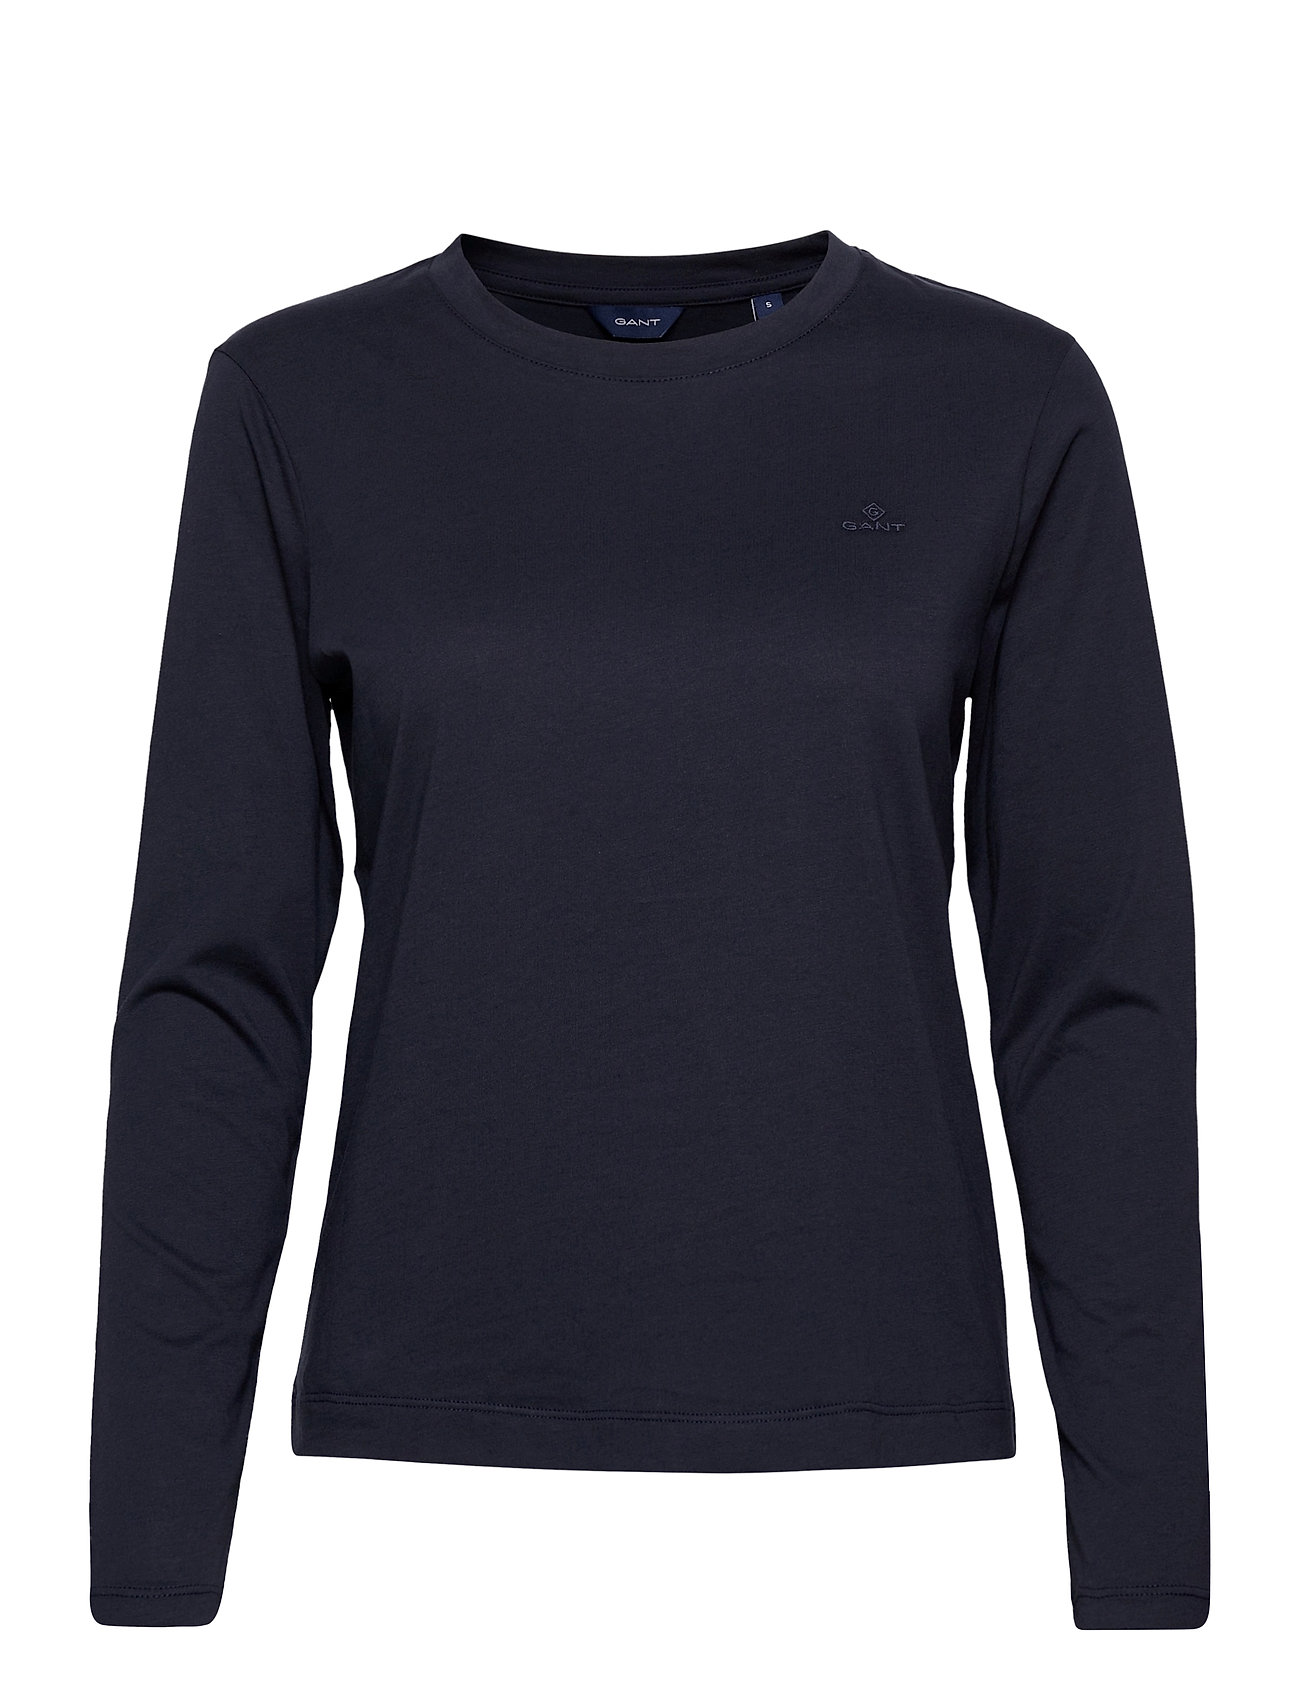 Original Ls T-Shirt T-shirts & Tops Long-sleeved Sininen GANT